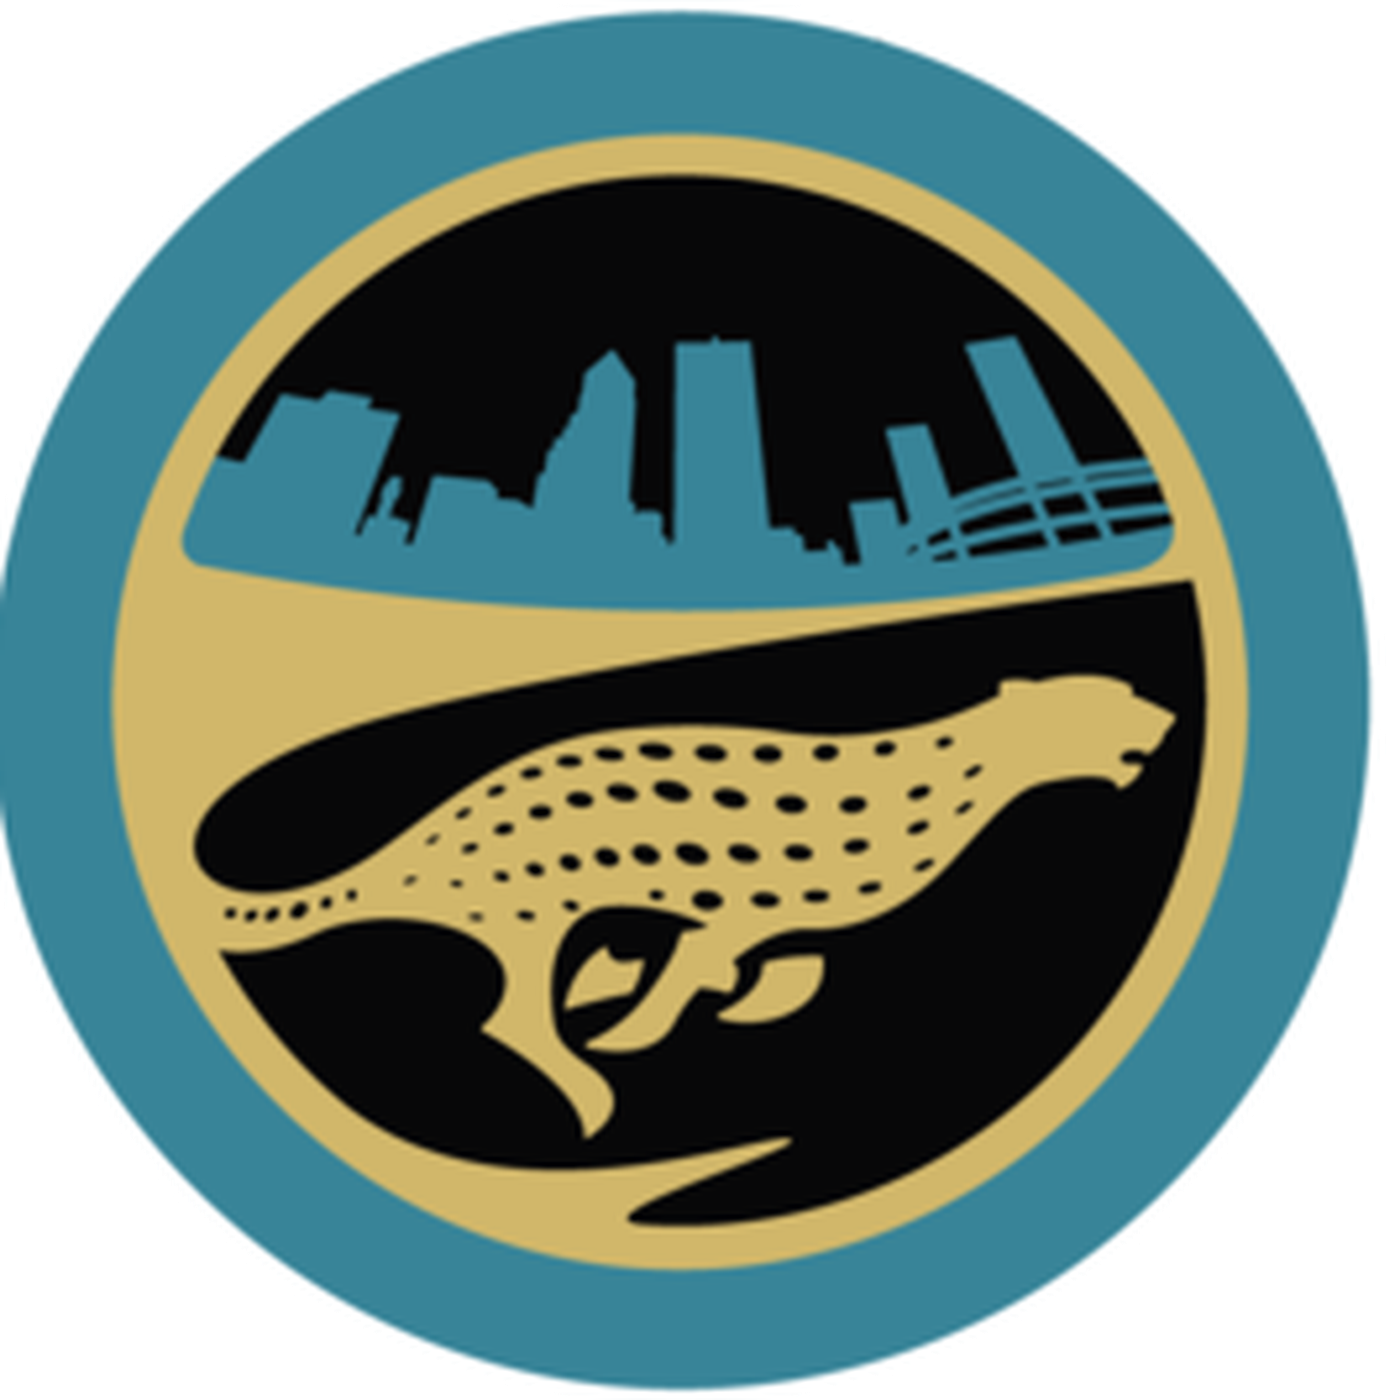 Download PNG image - Jacksonville Jaguars Transparent Images PNG 